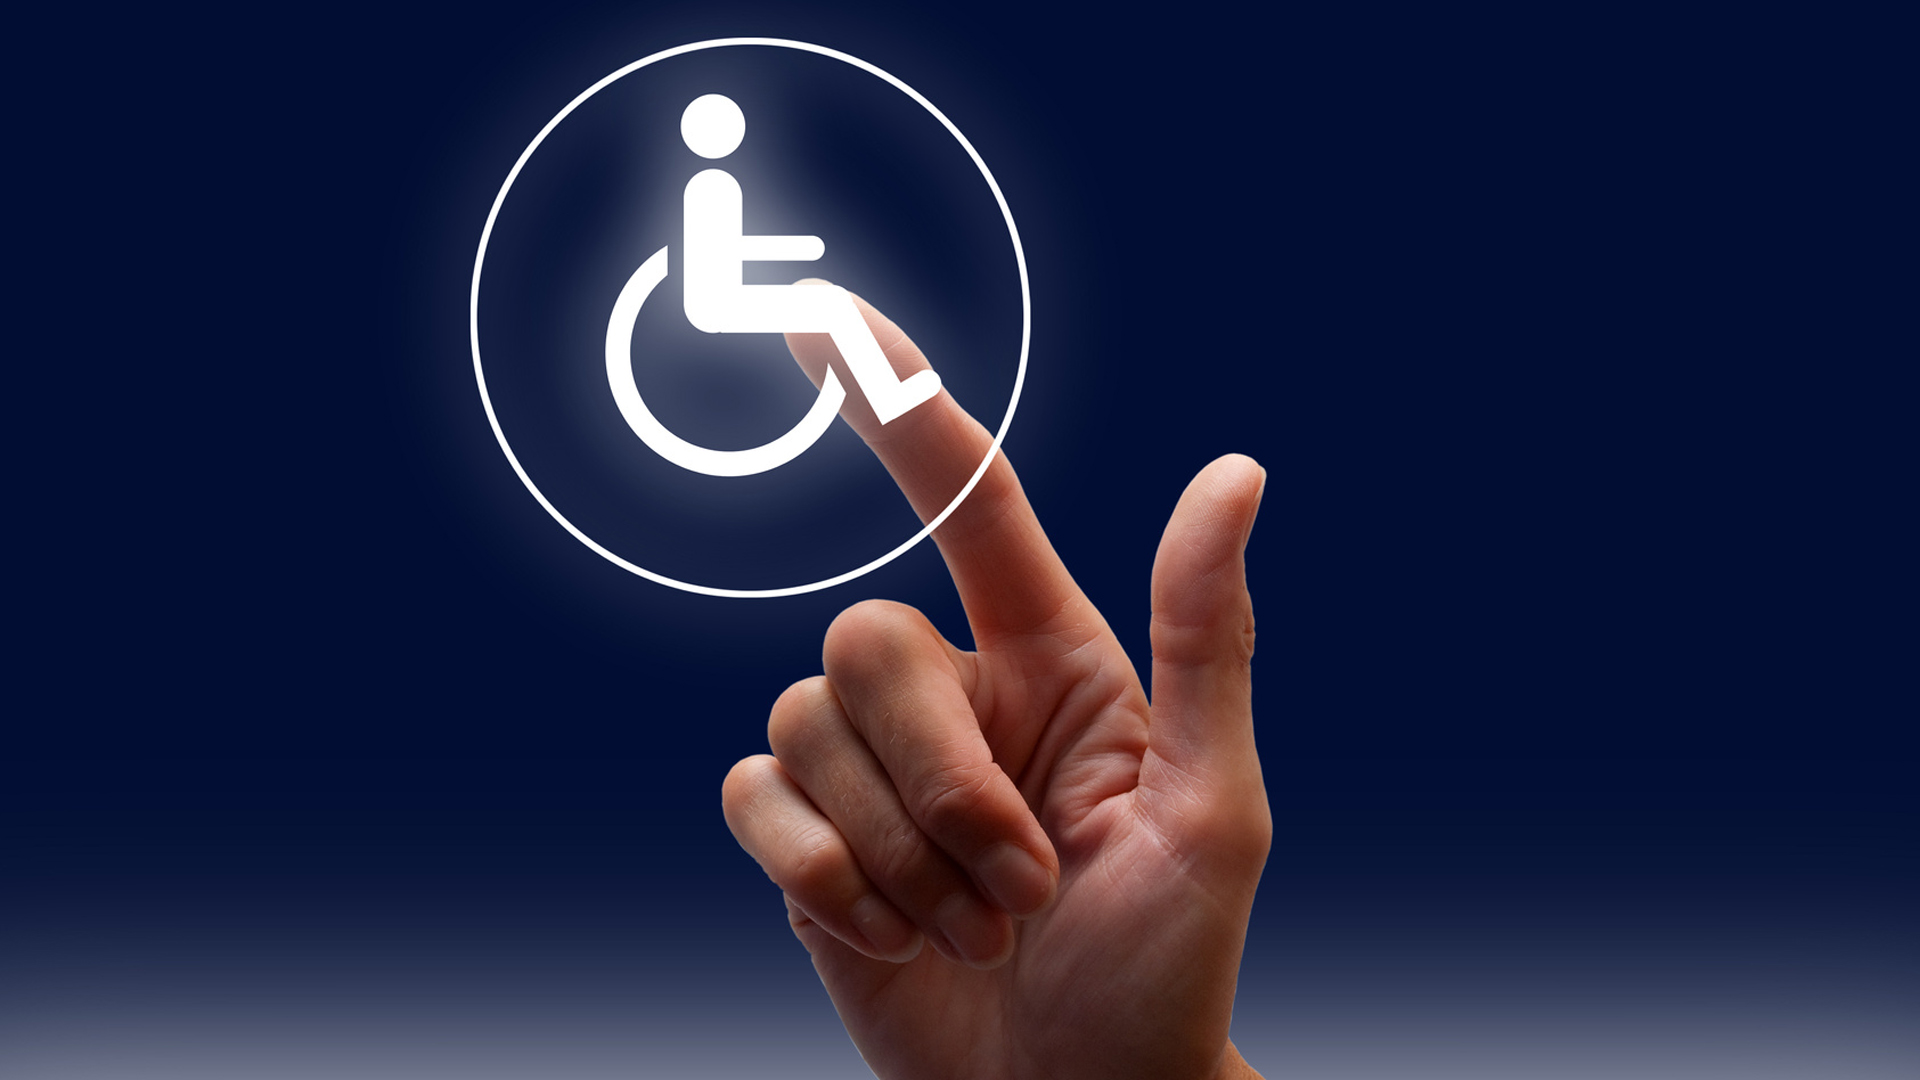 Vor einem blauen Hintergrund tippt eine Hand mit dem Zeigefinger auf ein weißes Piktogramm eines Rollstuhlfahrenden.